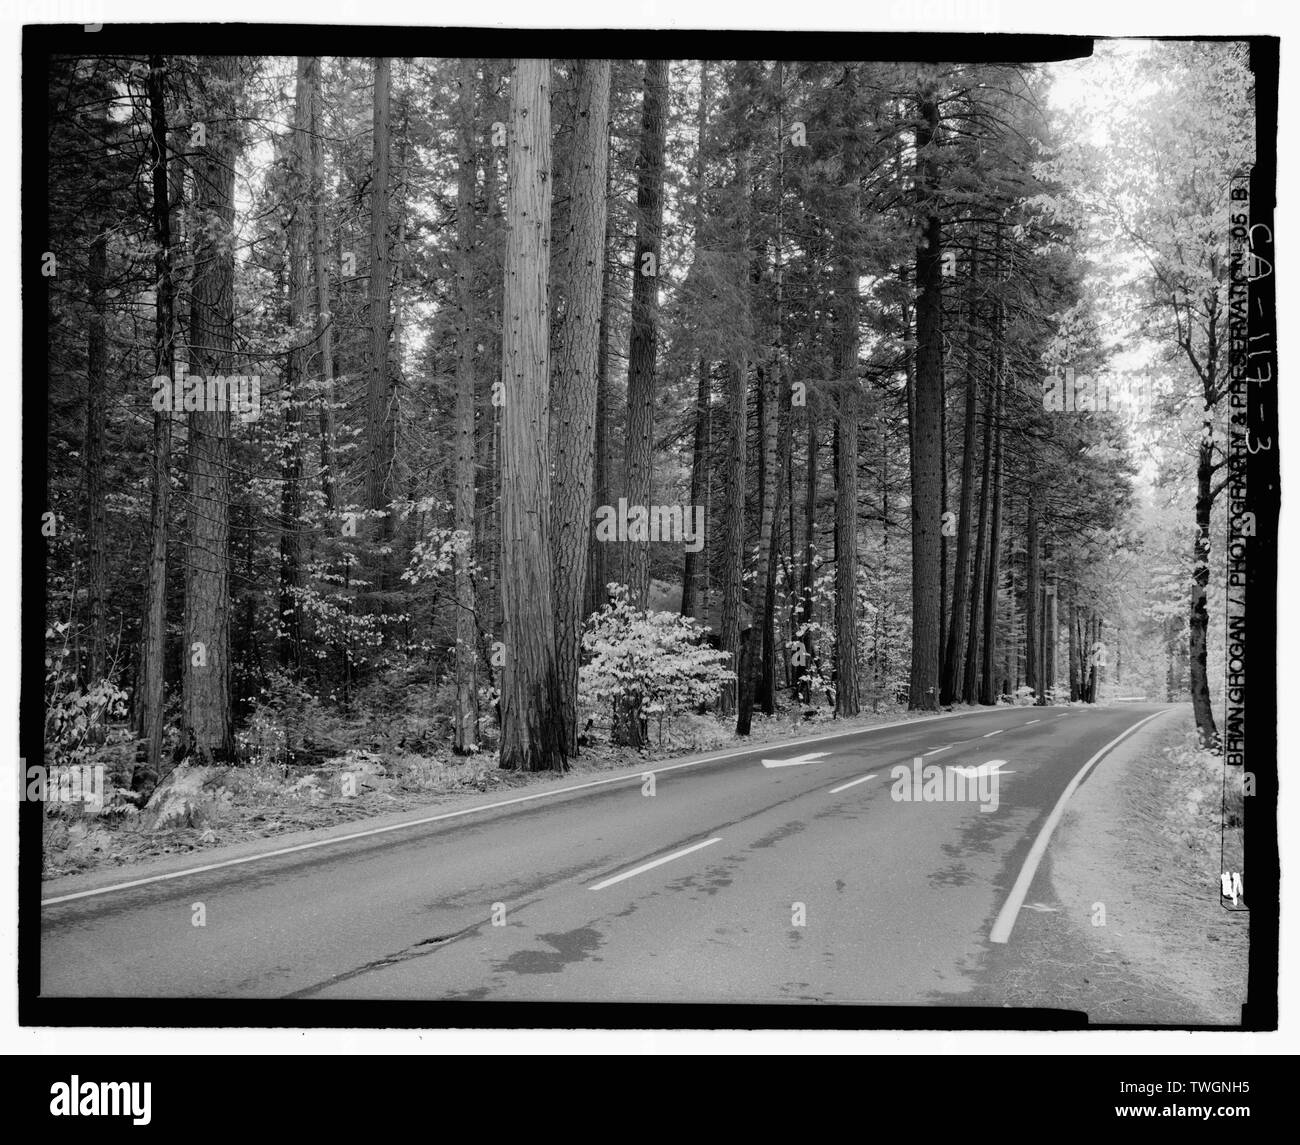 Mit Blick auf Strasse AUF DER SÜDSEITE FAHREN VON DER STRASSE die Wahlbeteiligung in der Nähe von GUNSITE. Suchen WSW. GIS-N-37 43 16,8-W-119 38 24,2 - Yosemite National Park Straßen und Brücken, Yosemite Village, Mariposa County, CA Stockfoto